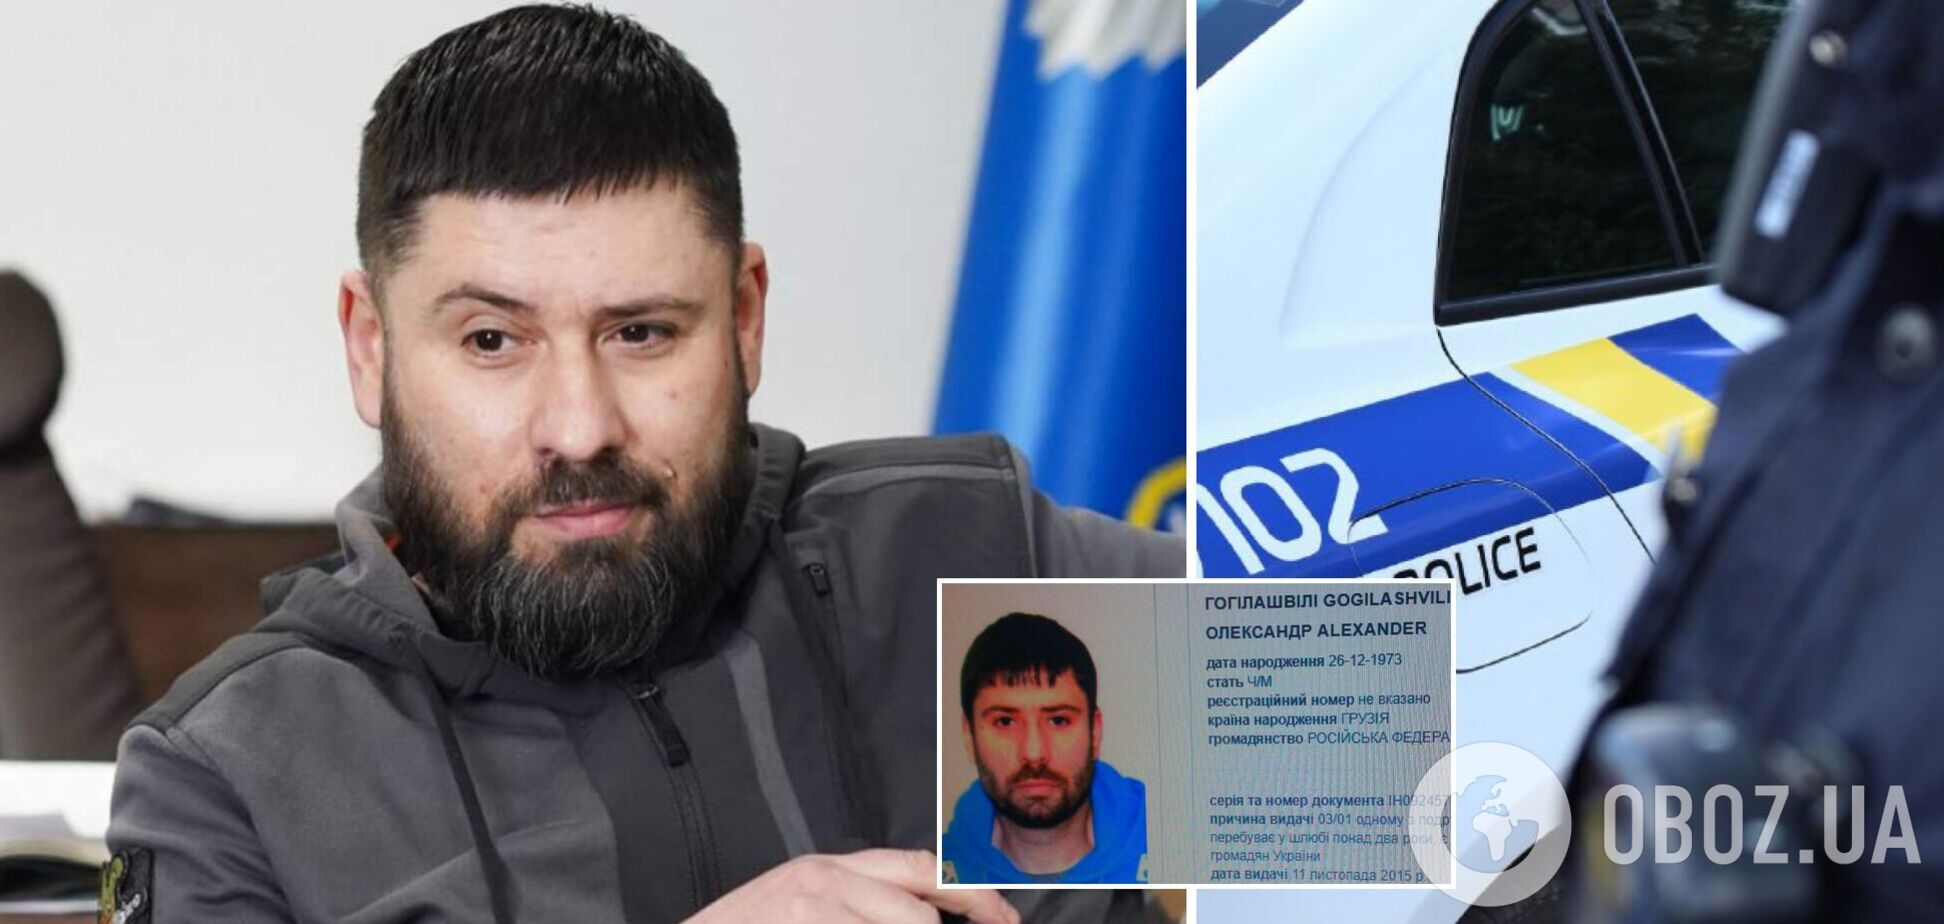 Скандальный Гогилашвили в 2019 году фигурировал в уголовном производстве по сбыту наркотиков. Документ